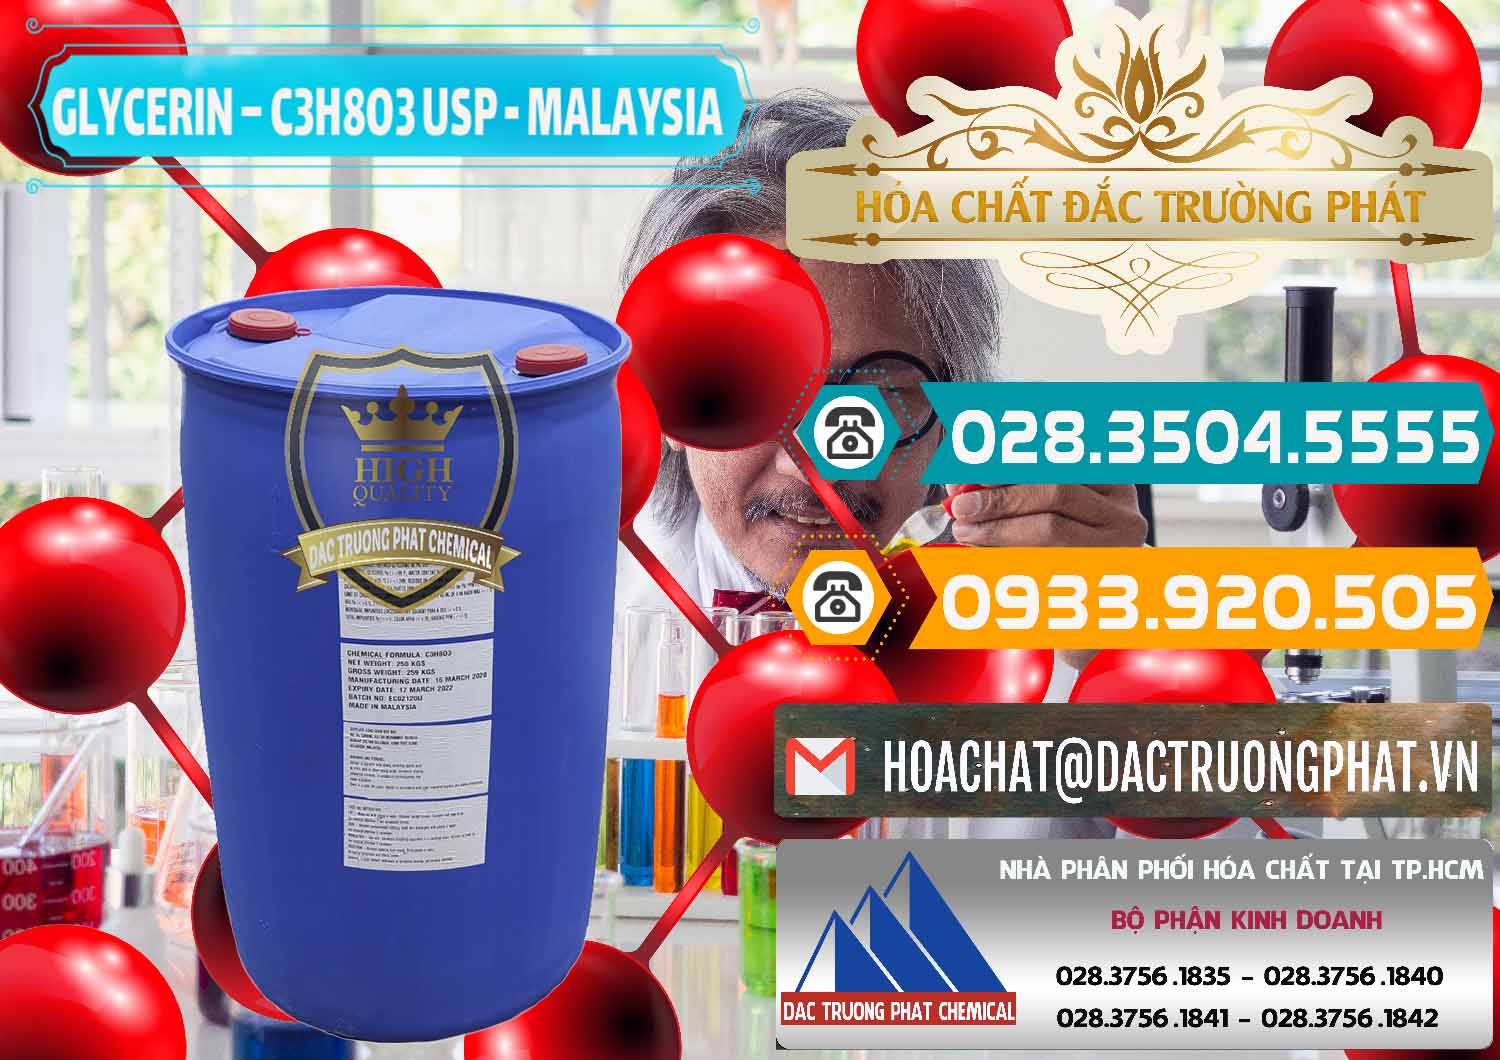 Bán & cung cấp Glycerin – C3H8O3 USP Malaysia - 0233 - Chuyên bán - cung cấp hóa chất tại TP.HCM - congtyhoachat.vn